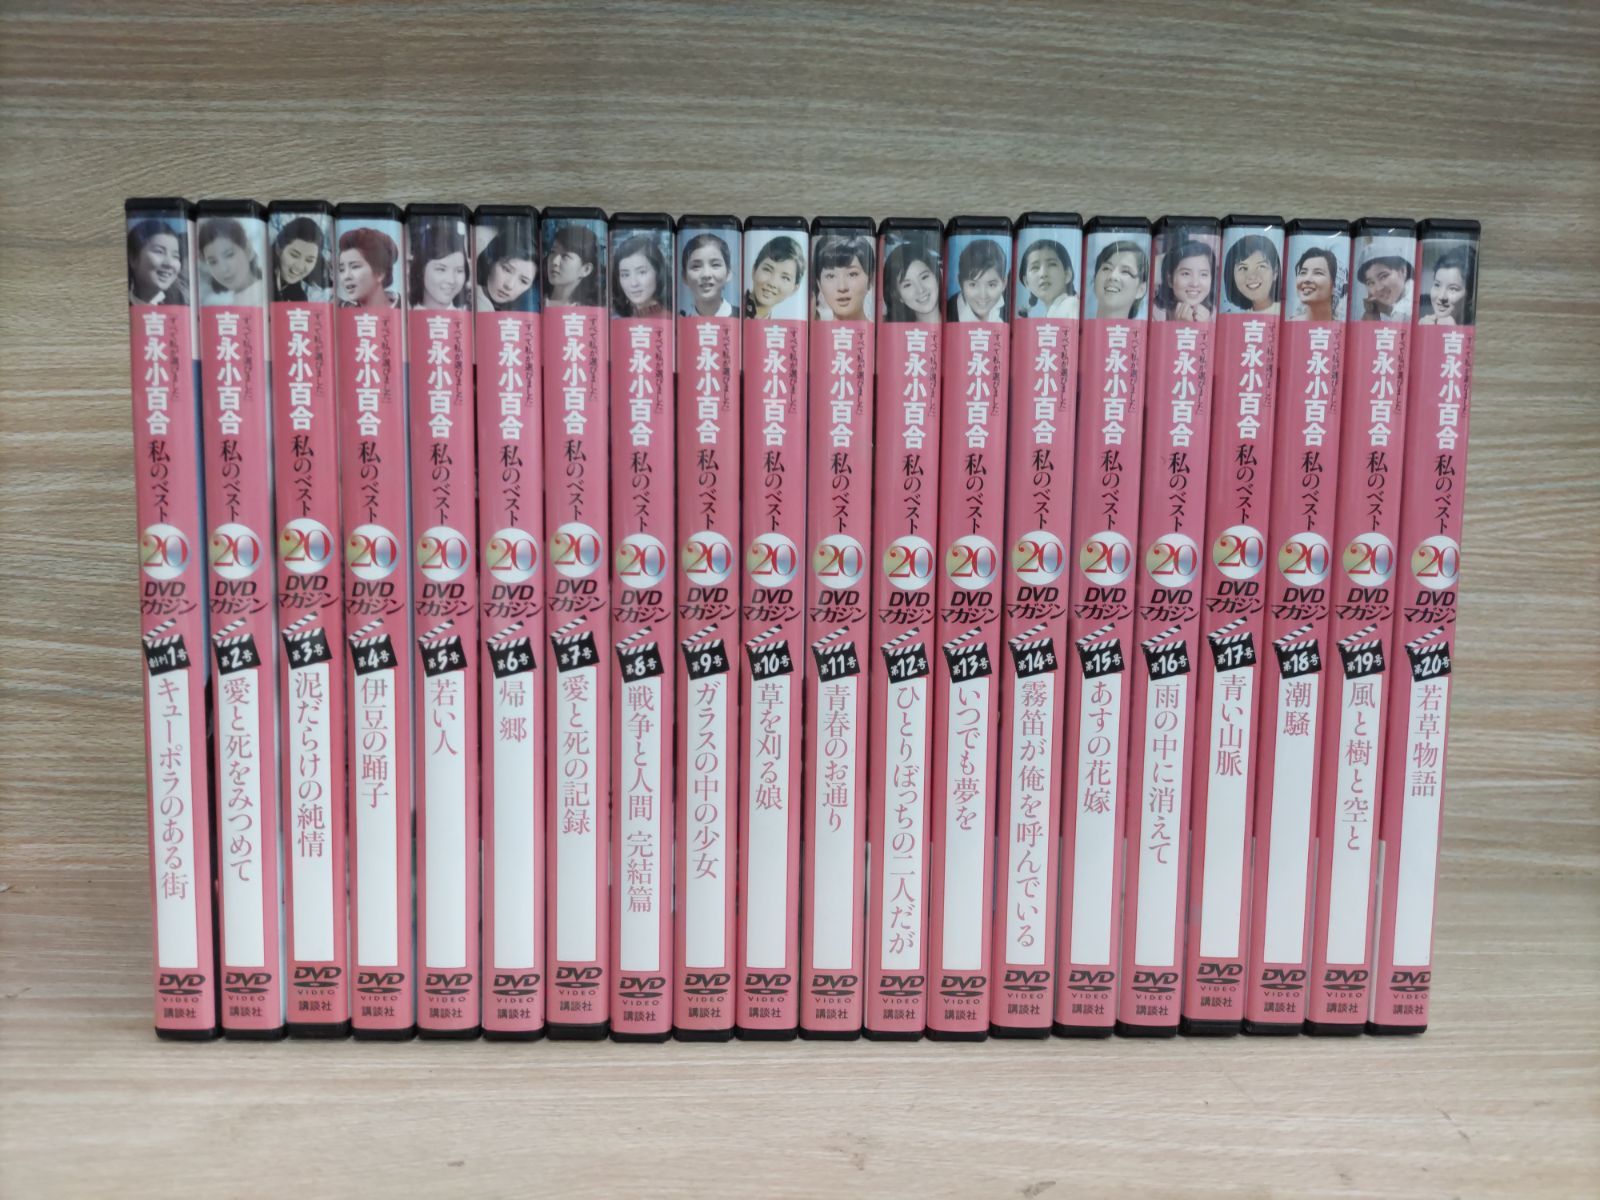 邦画・日本映画吉永小百合 私のベスト20 DVD 全20巻セット